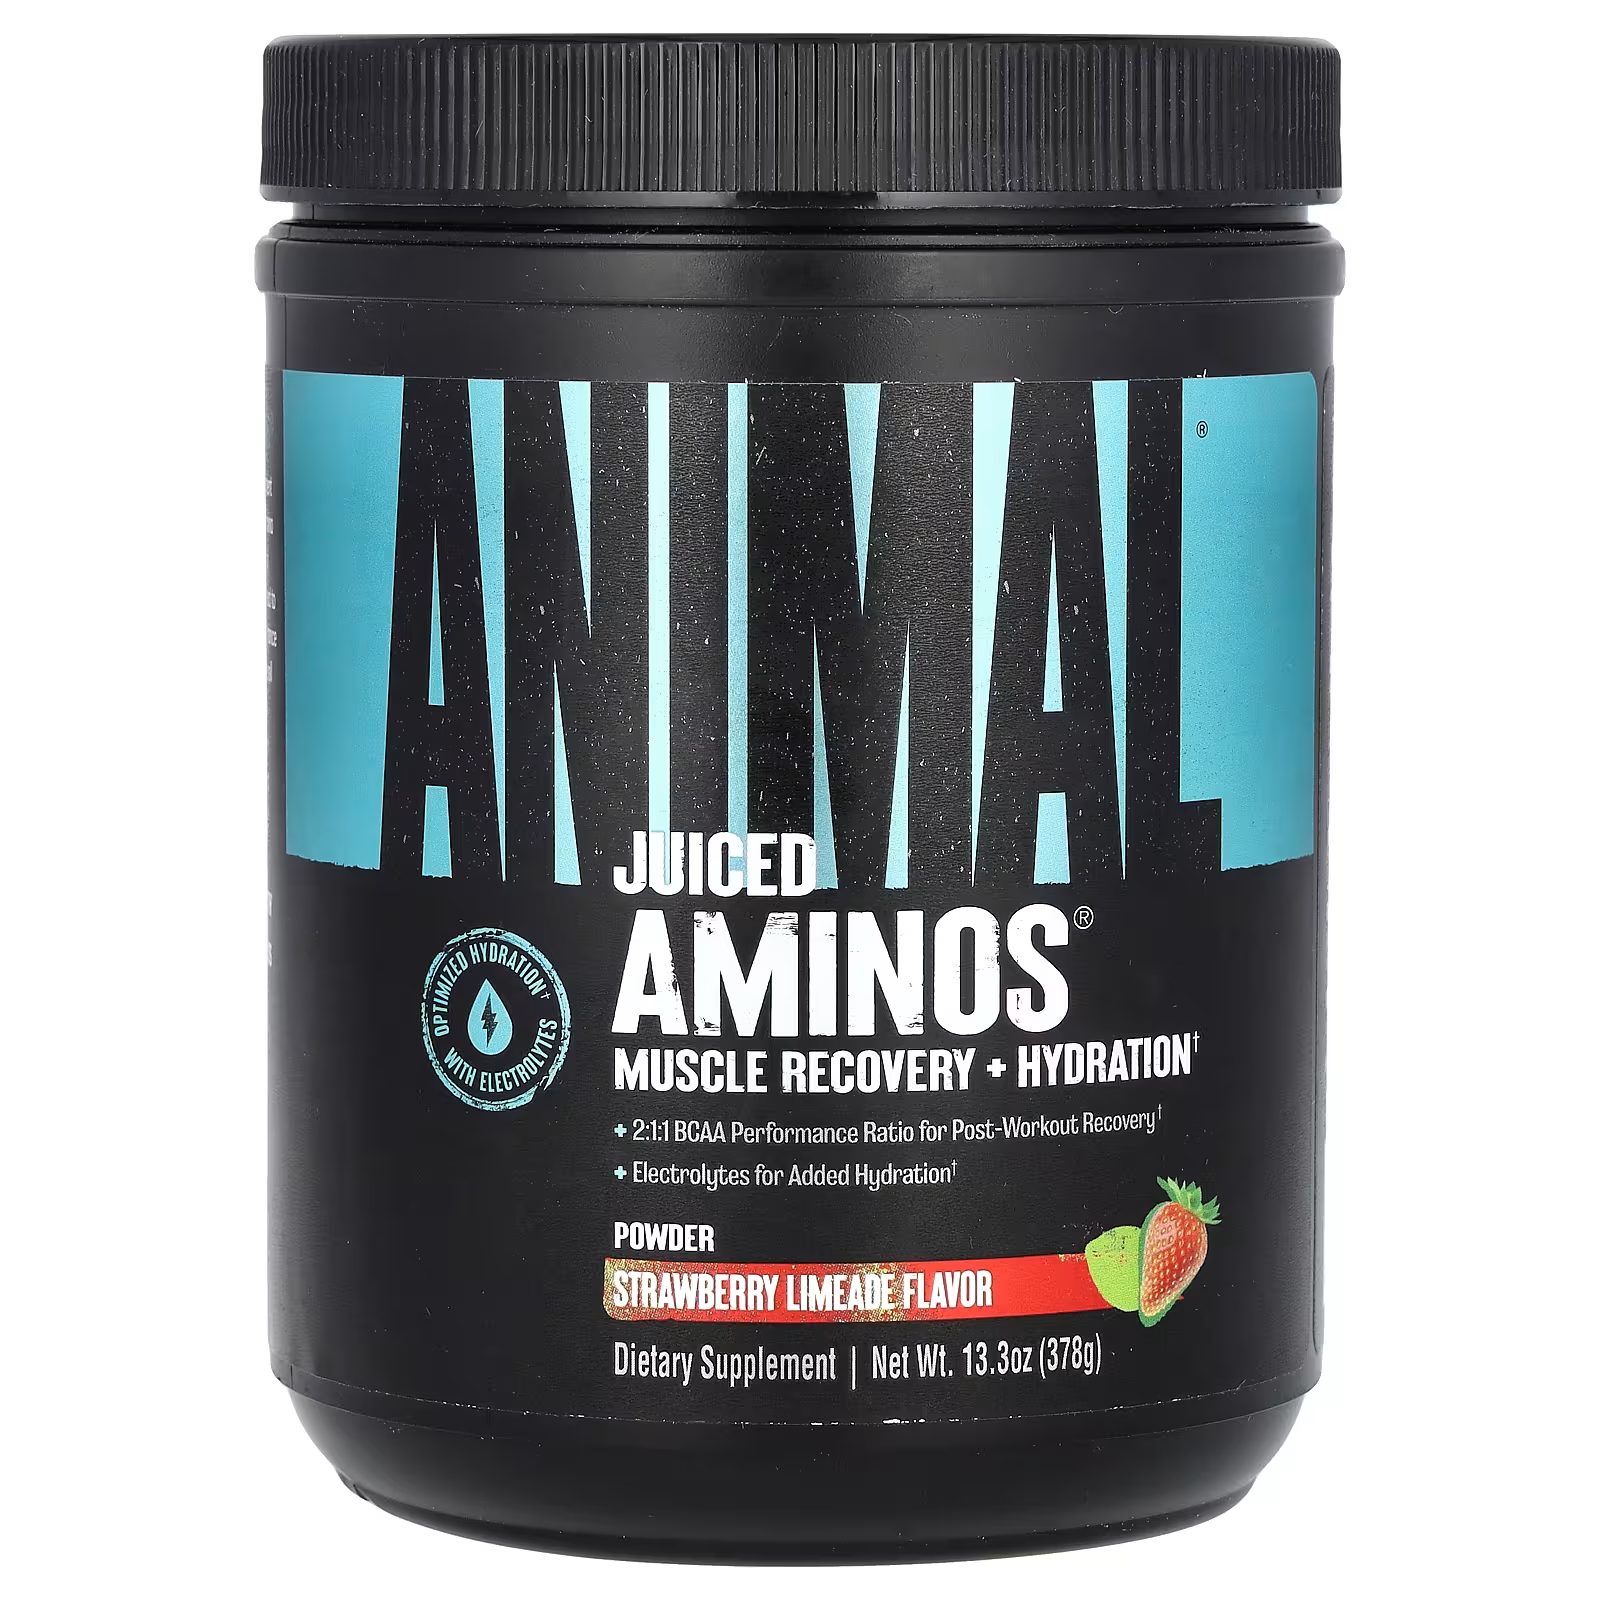 Пищевая добавка Animal Juiced Aminos клубника и лайм, 378 г